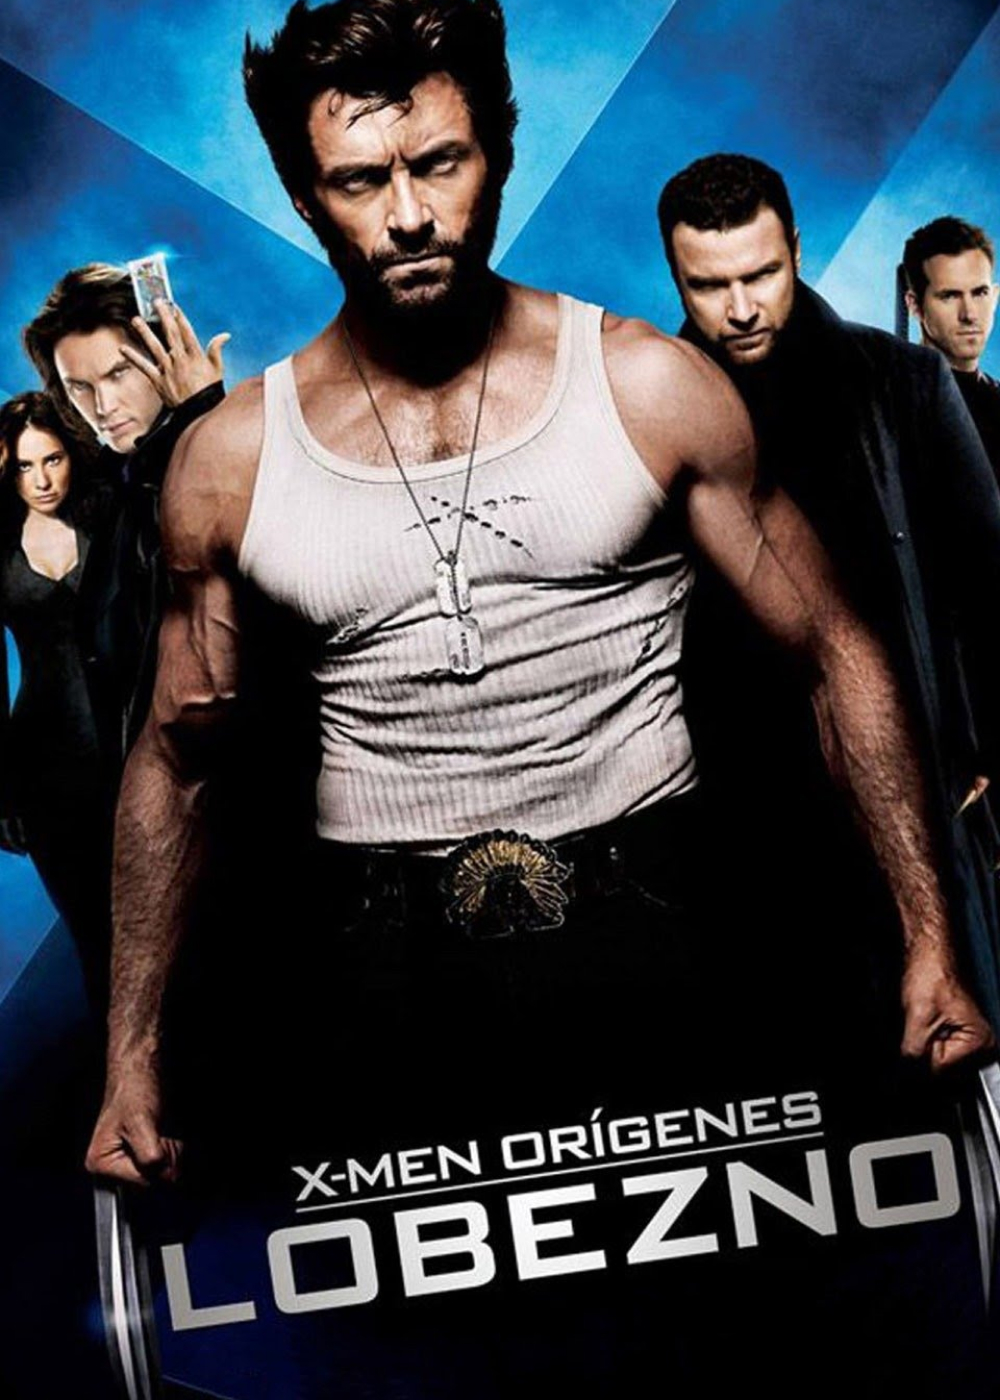 X-Men Origenes